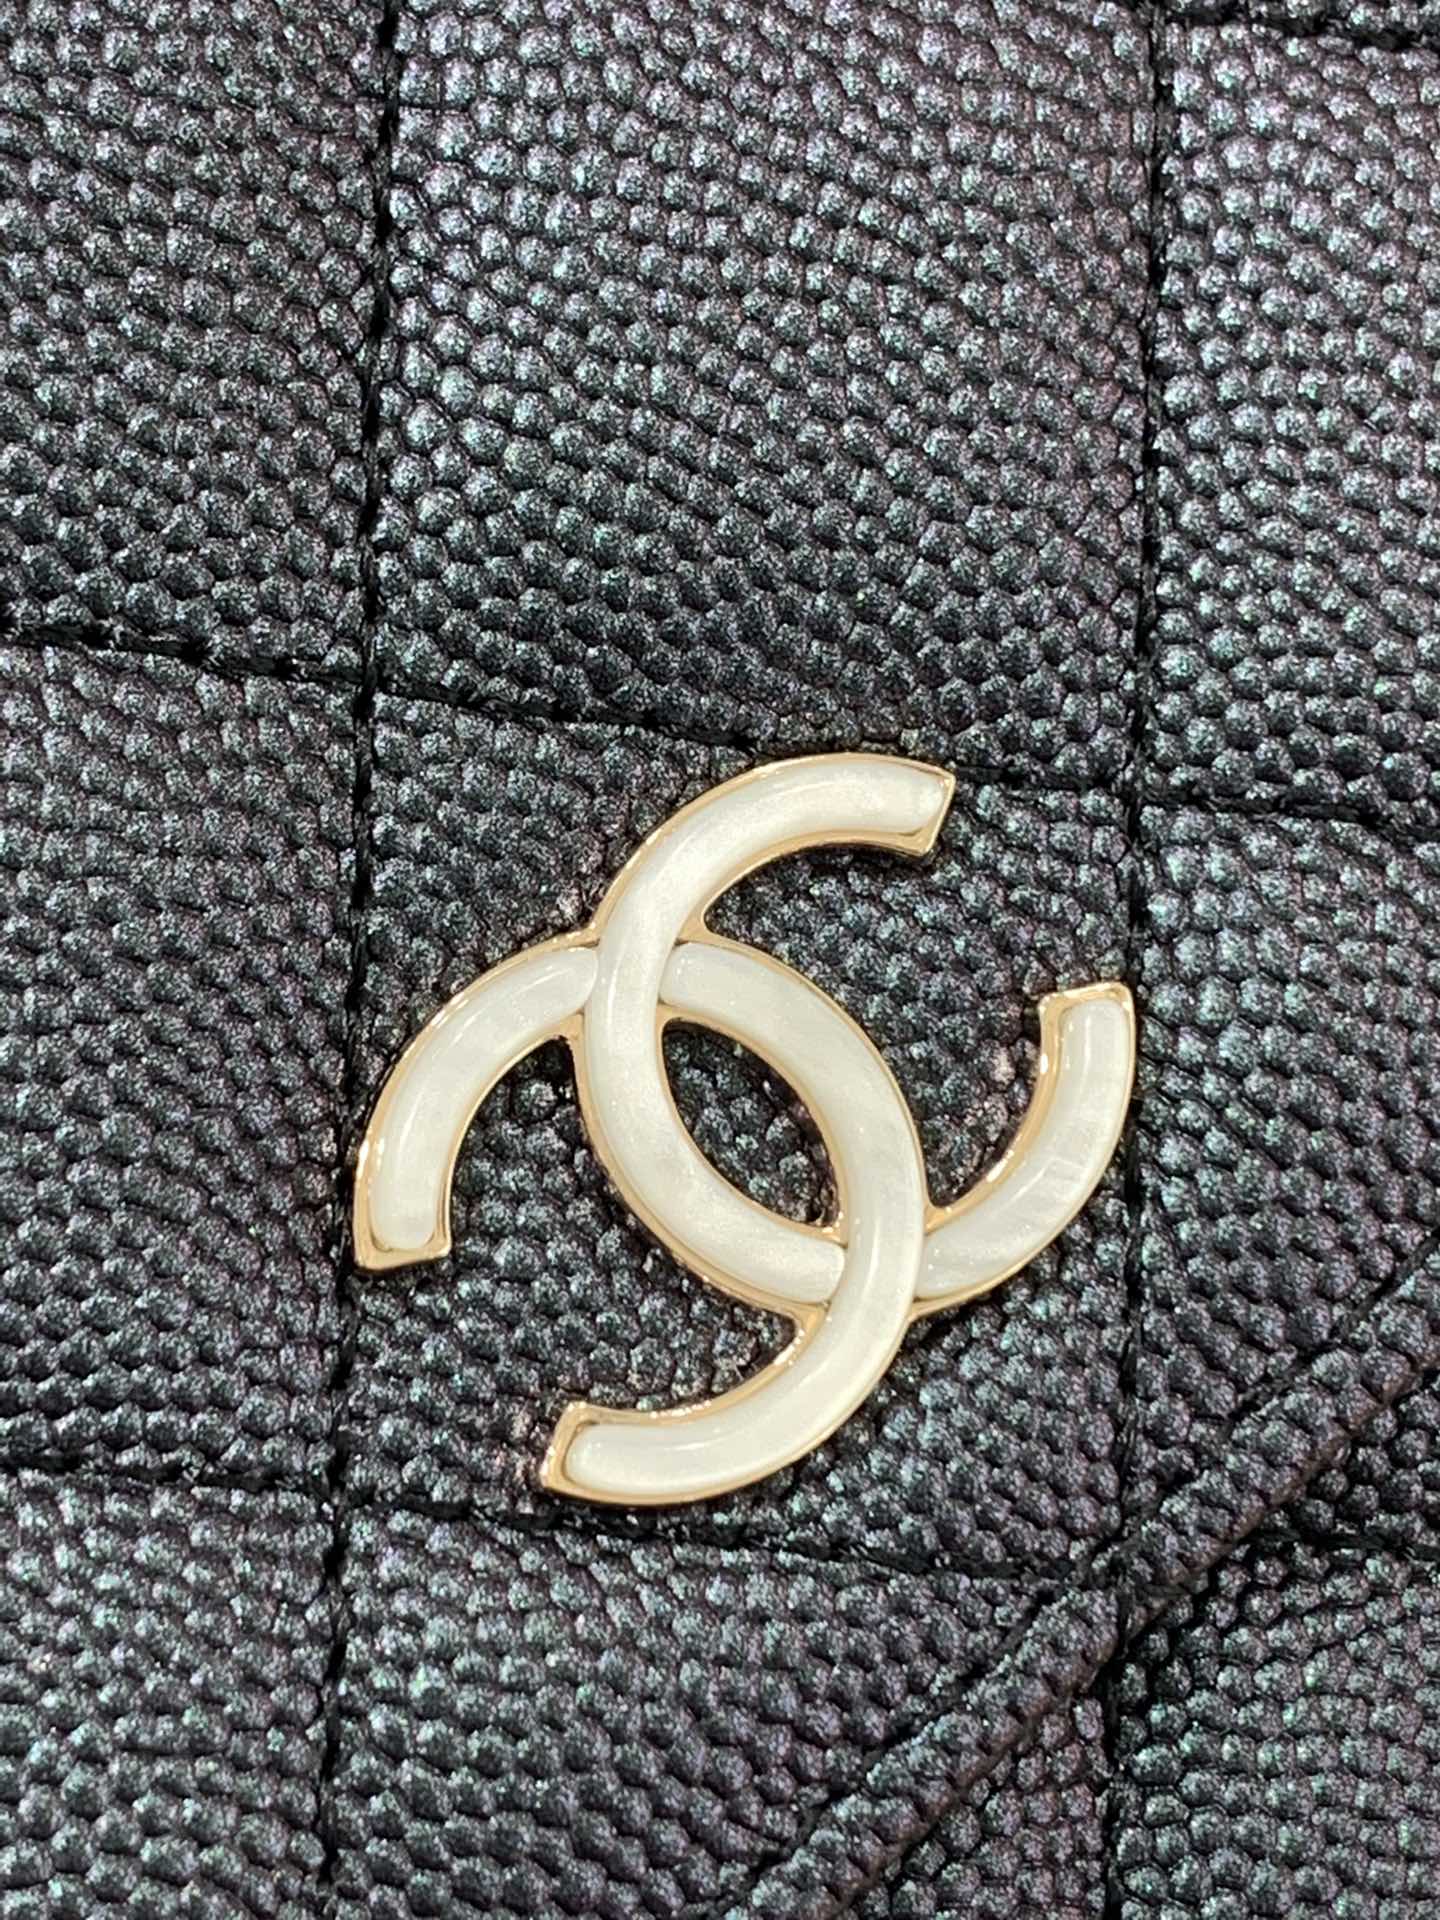 【按扣版】Chanel WOC链条包 新款变色woc 珠光皮 不同光线变换出炫彩 19.5-13-3.5cm